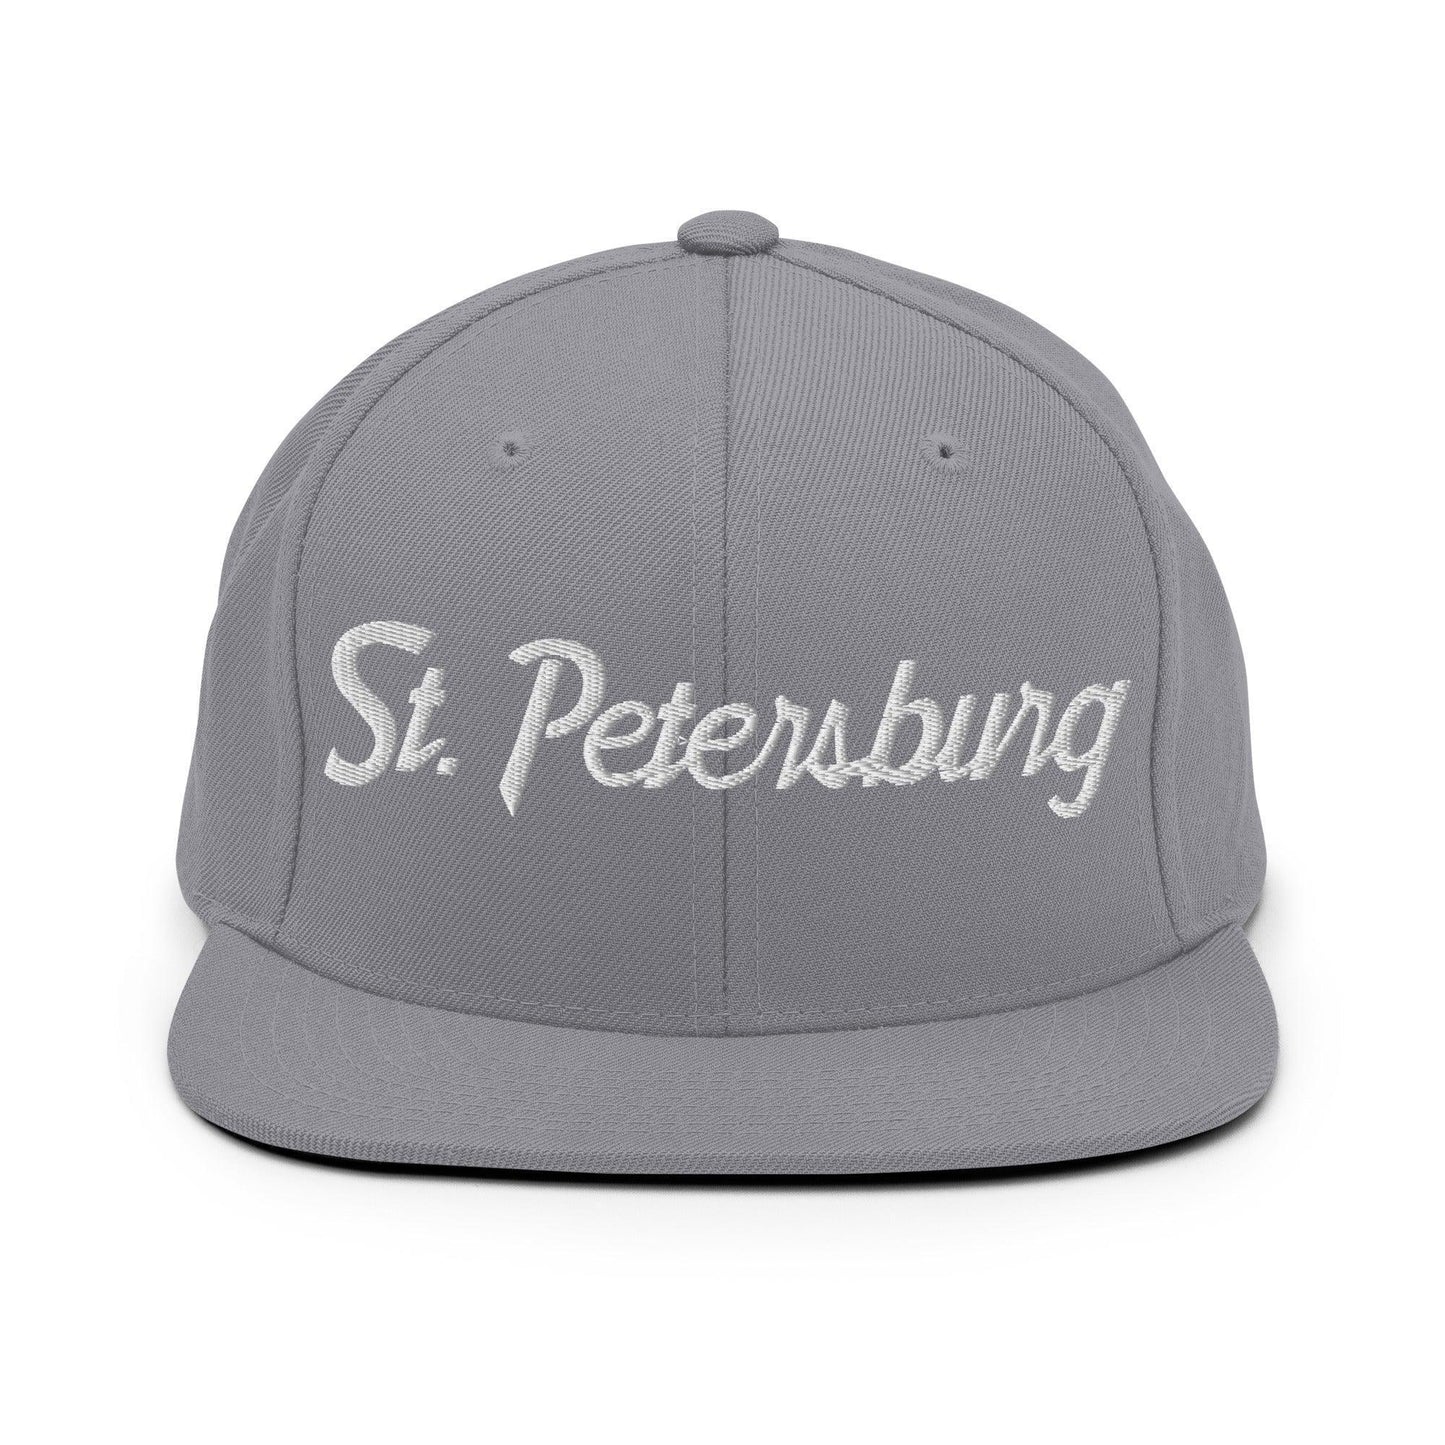 St. Petersburg Script Snapback Hat Silver